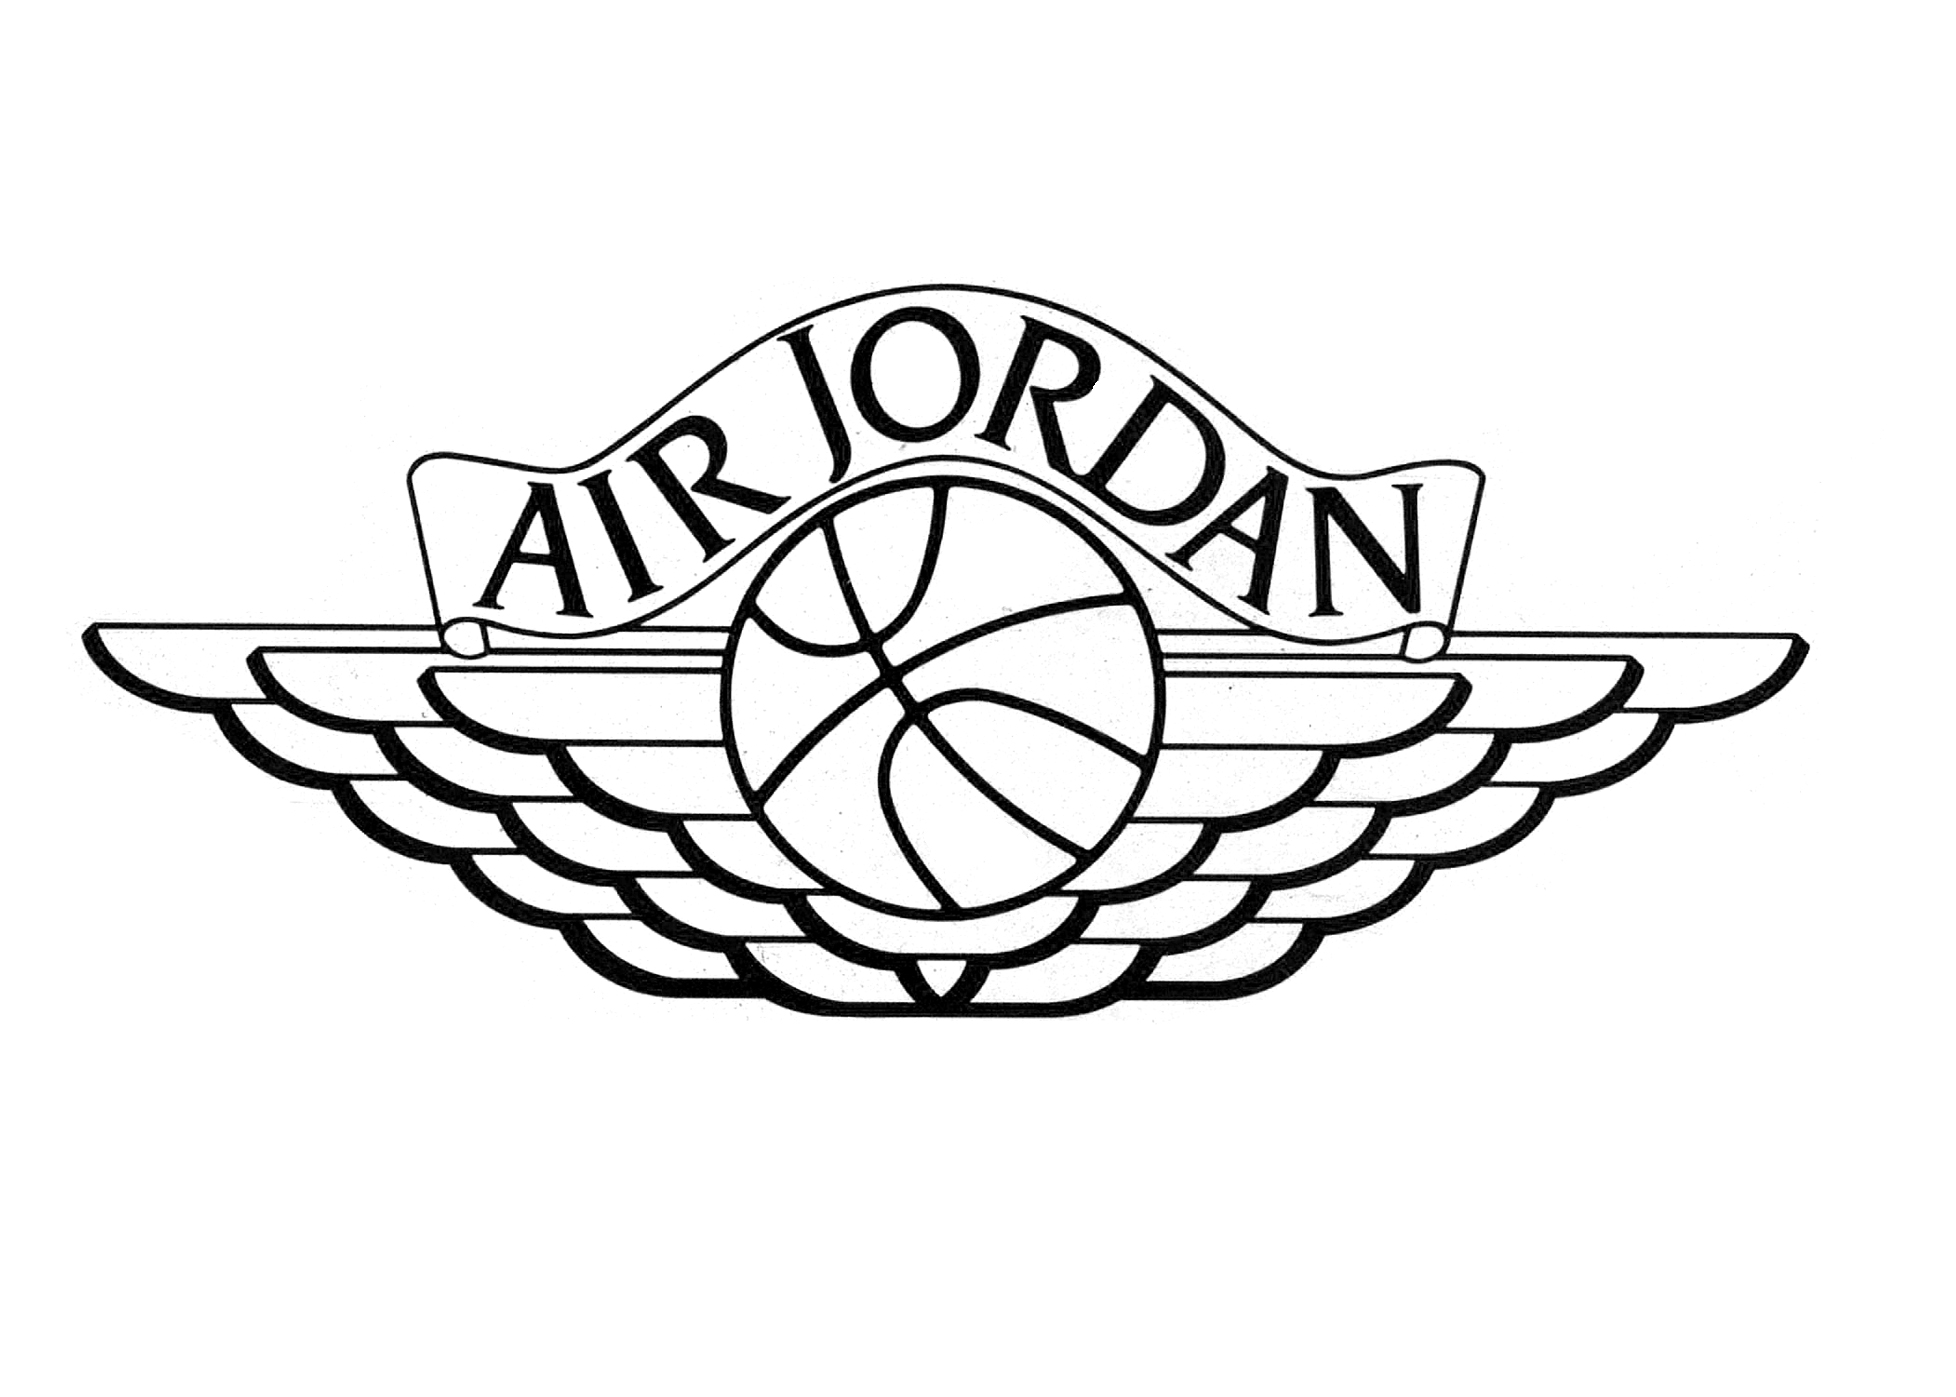 air-jordan-logo_31775.jpg